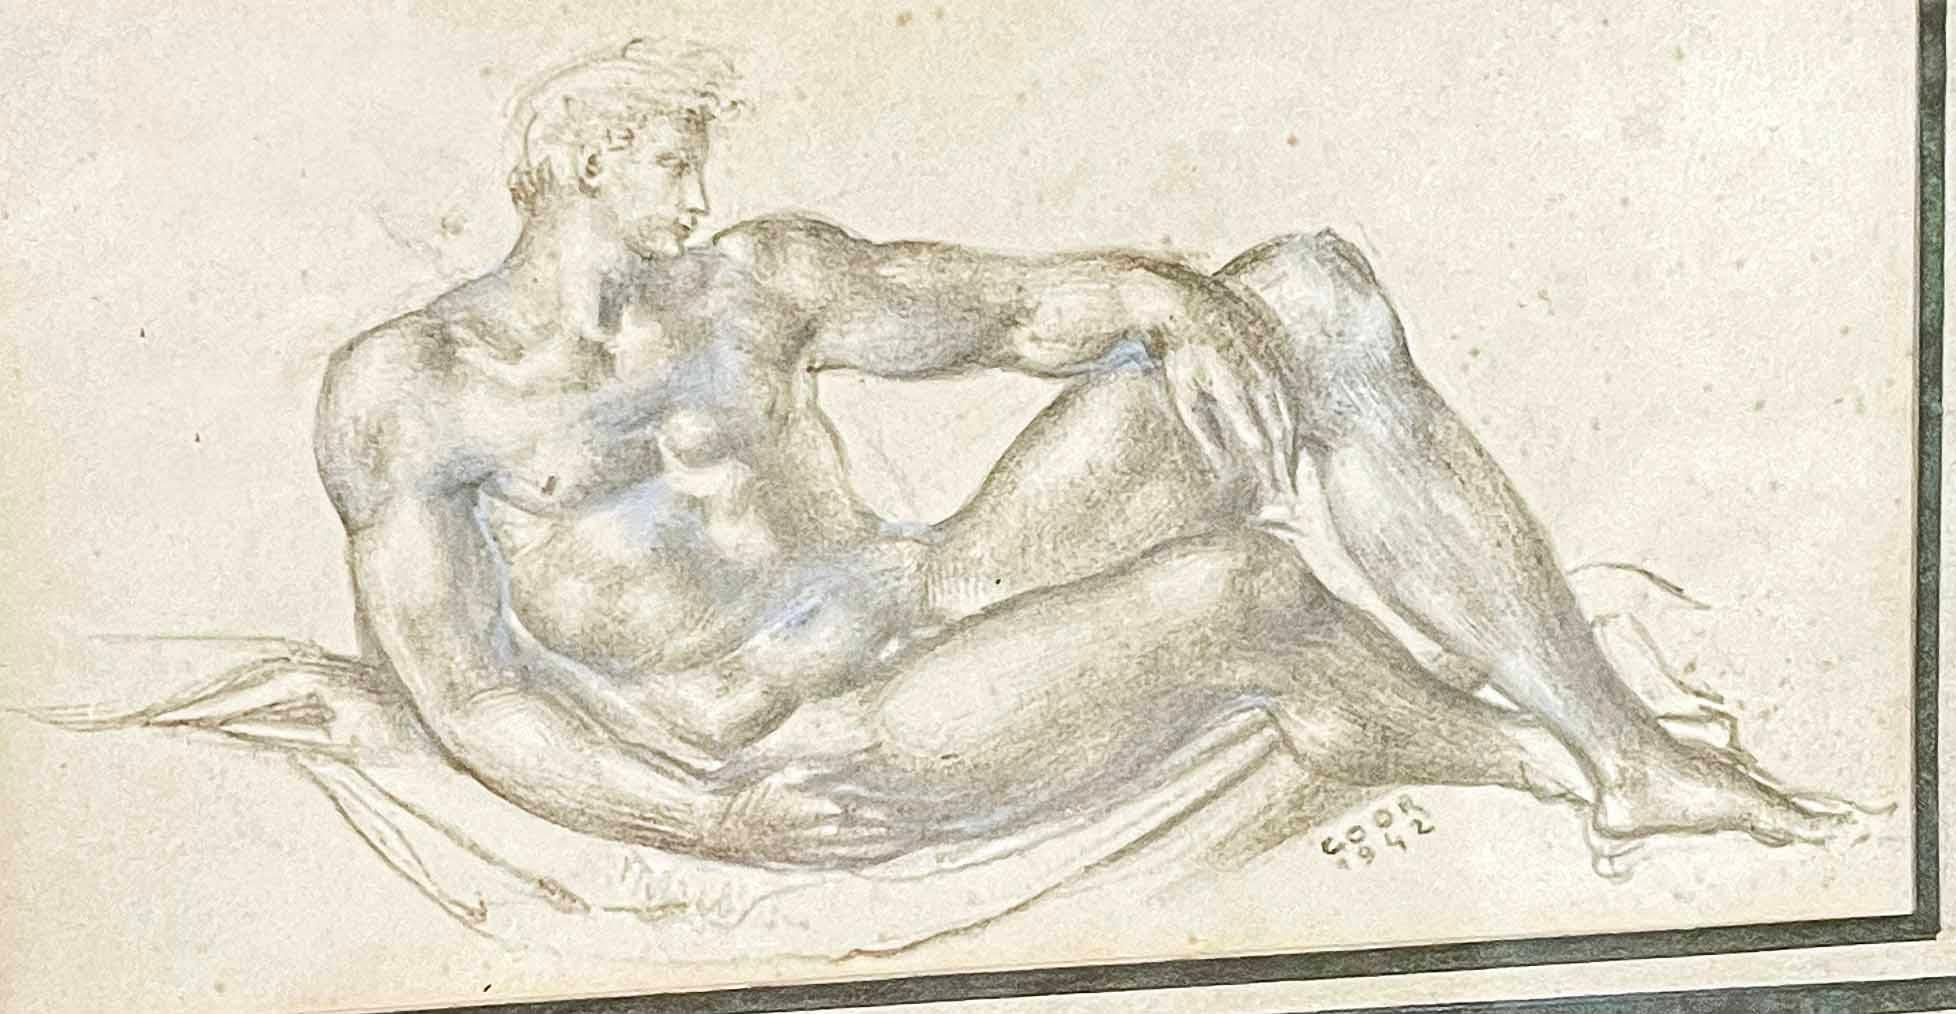 Diese 1942 von Gaston Goor gezeichnete Zeichnung eines liegenden männlichen Aktes, die auf dem Höhepunkt des Art déco in den 1940er Jahren in Frankreich entstand und eindeutig von den monumentalen männlichen Akten Michelangelos und der italienischen